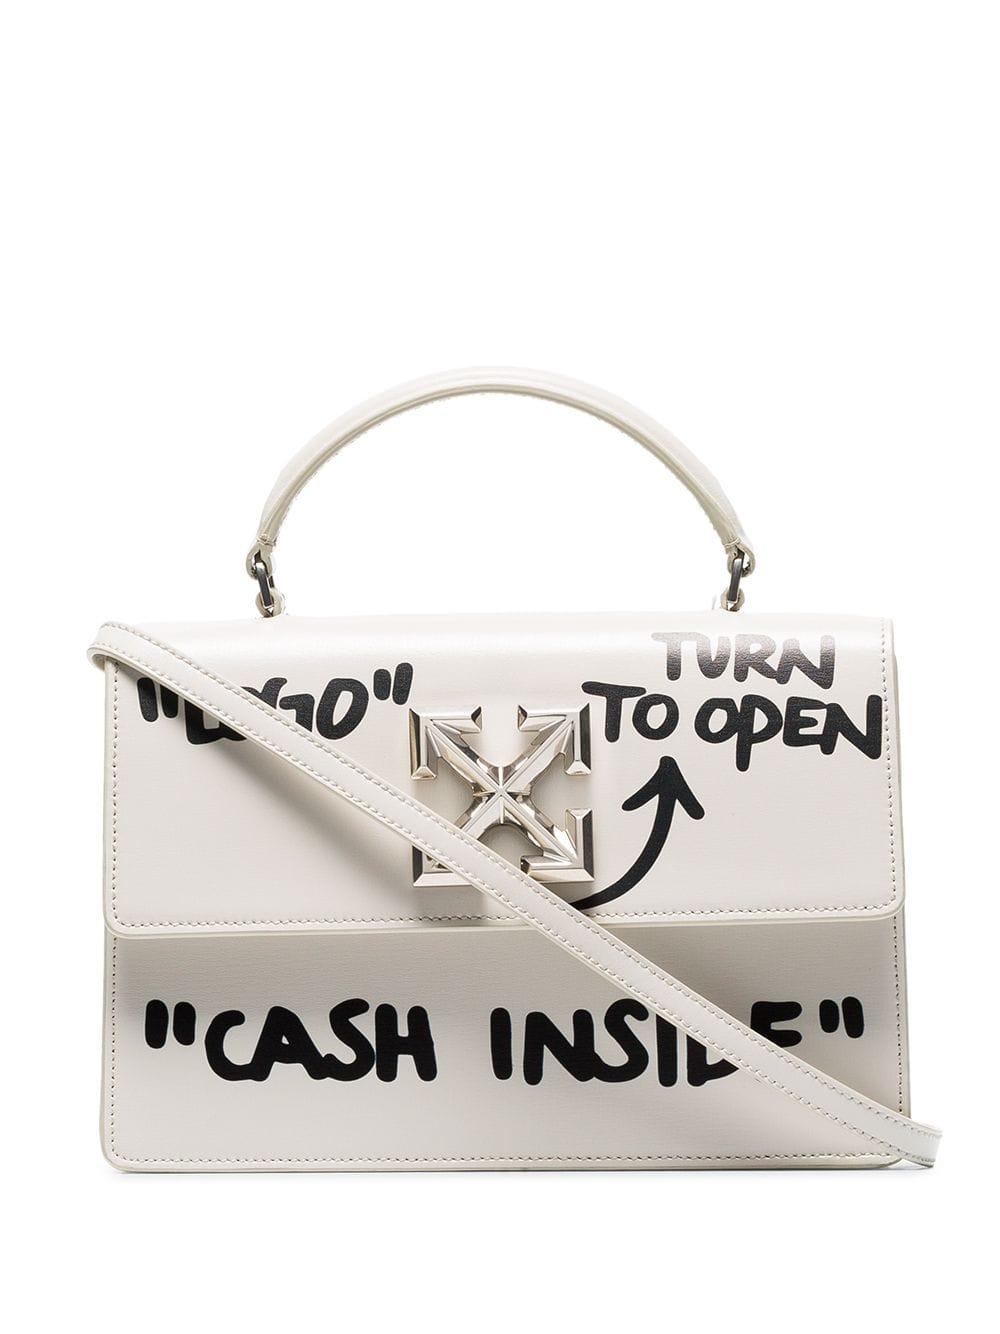 Off-White c/o Virgil Abloh Leather Jitney Cash Inside Bag in White - Lyst